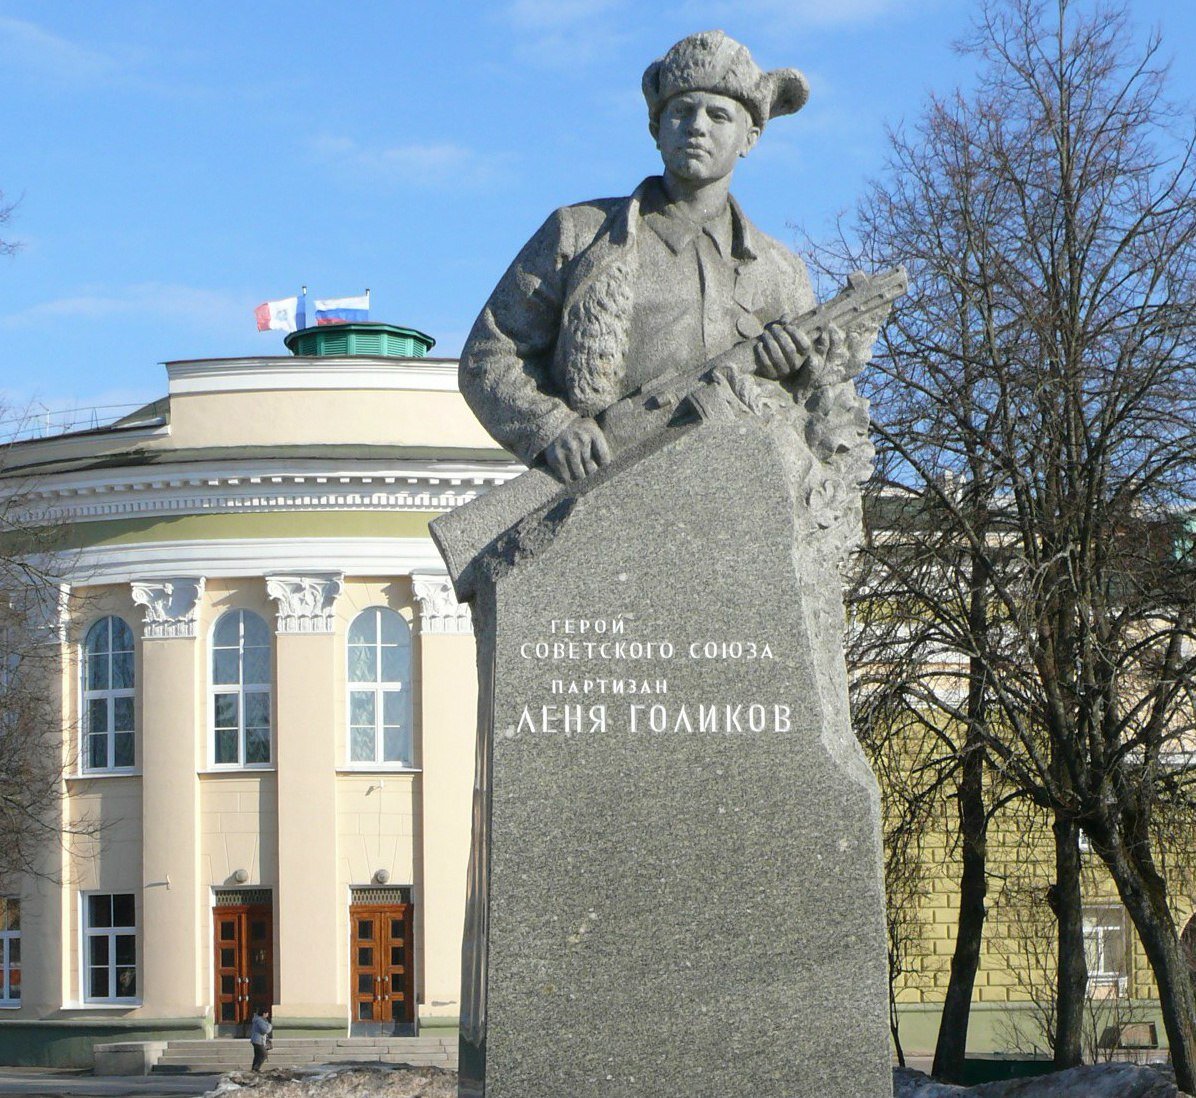 Памятник Лёне Голикову в Великом Новгороде. Фото из сети.